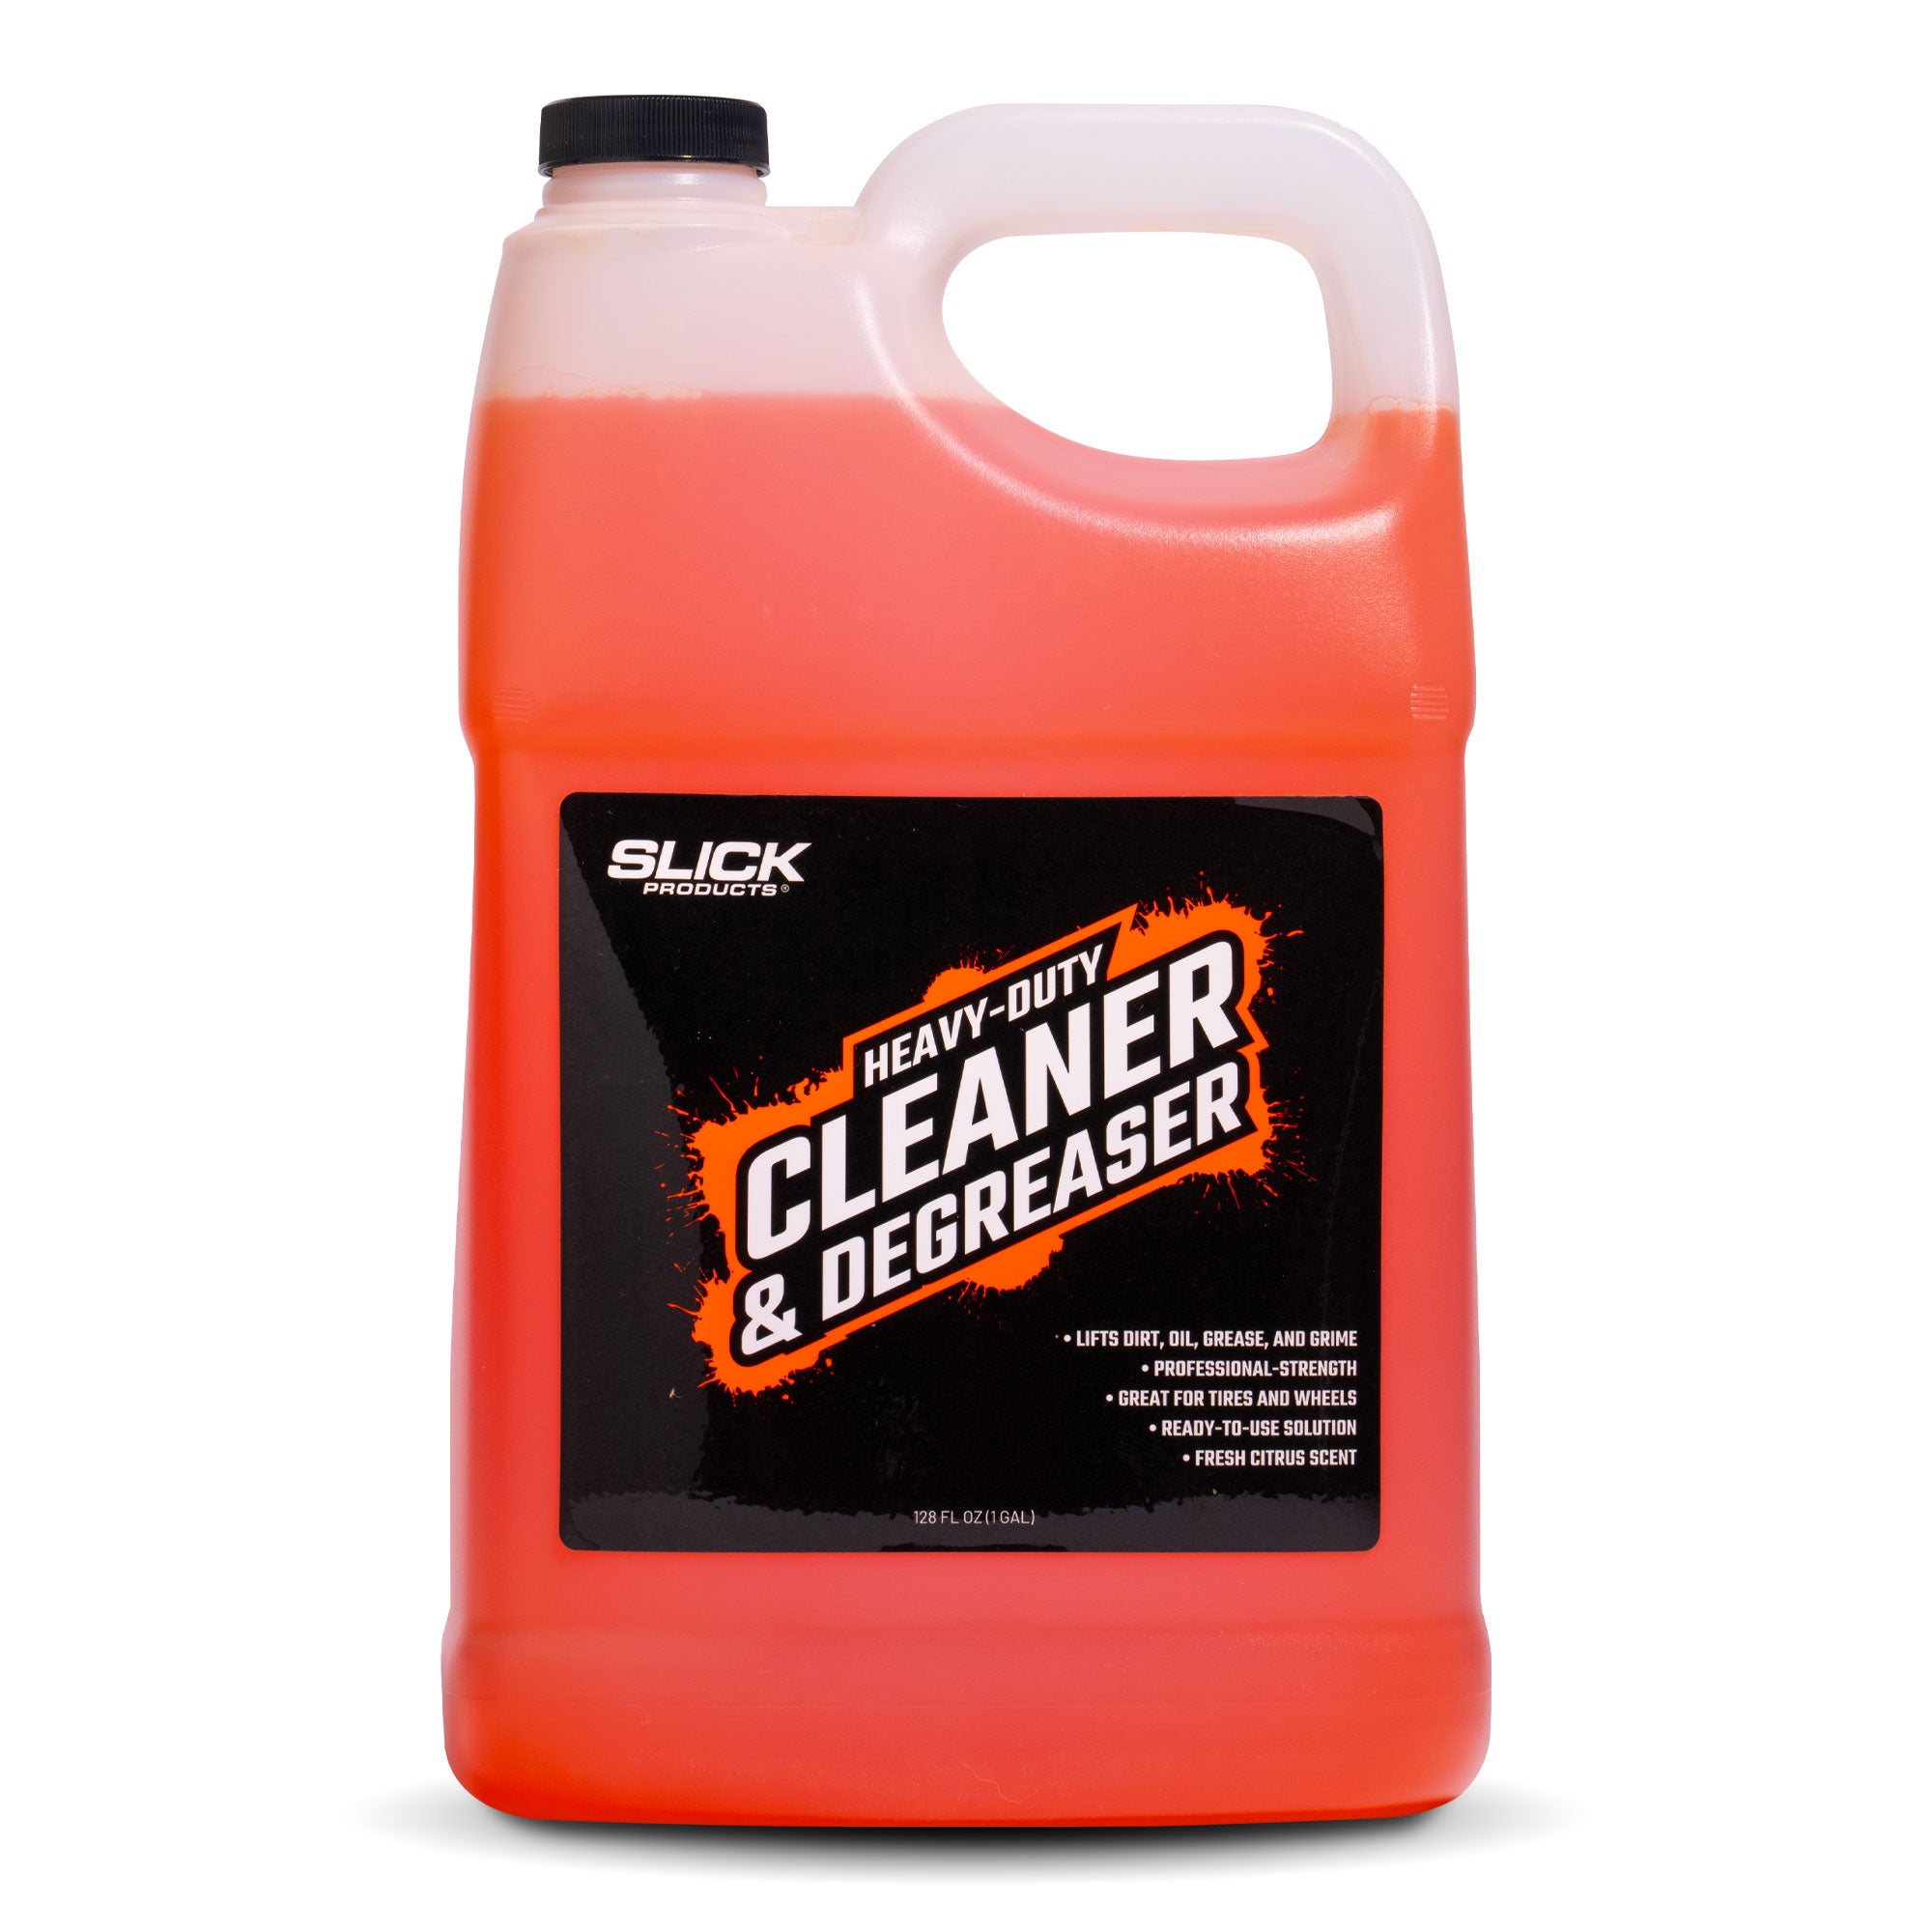 Orange Degreaser 16 Oz / 1 Gallon - All Purpose Cleaner Interior